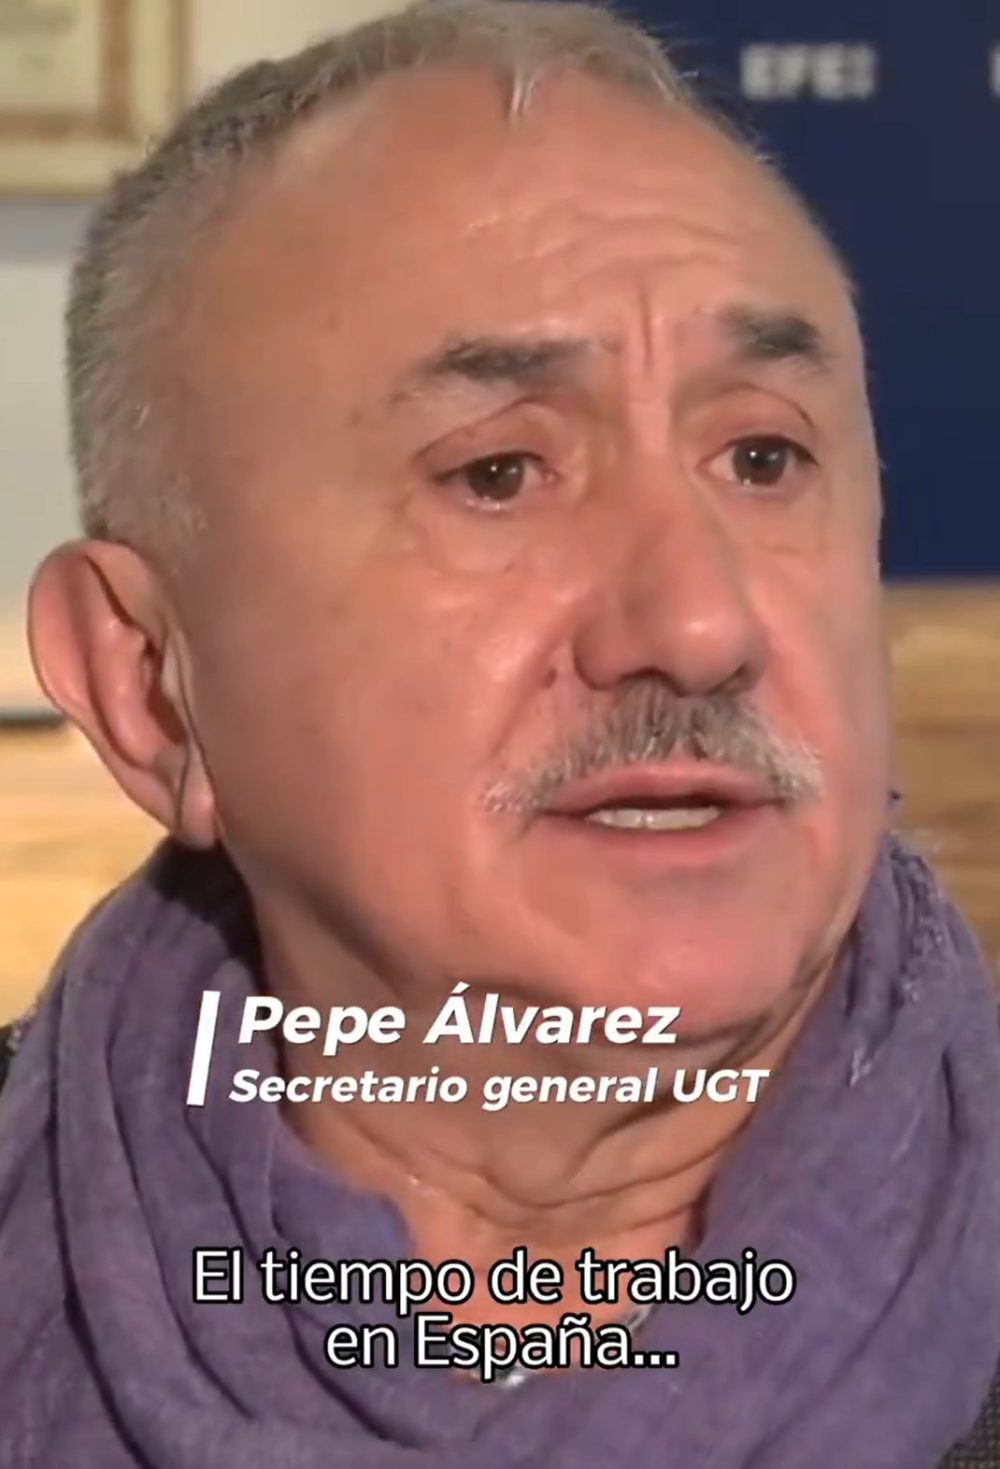 El secretario general de UGT, Pepe Álvarez, considera que en España “las jornadas laborales son muy largas”.